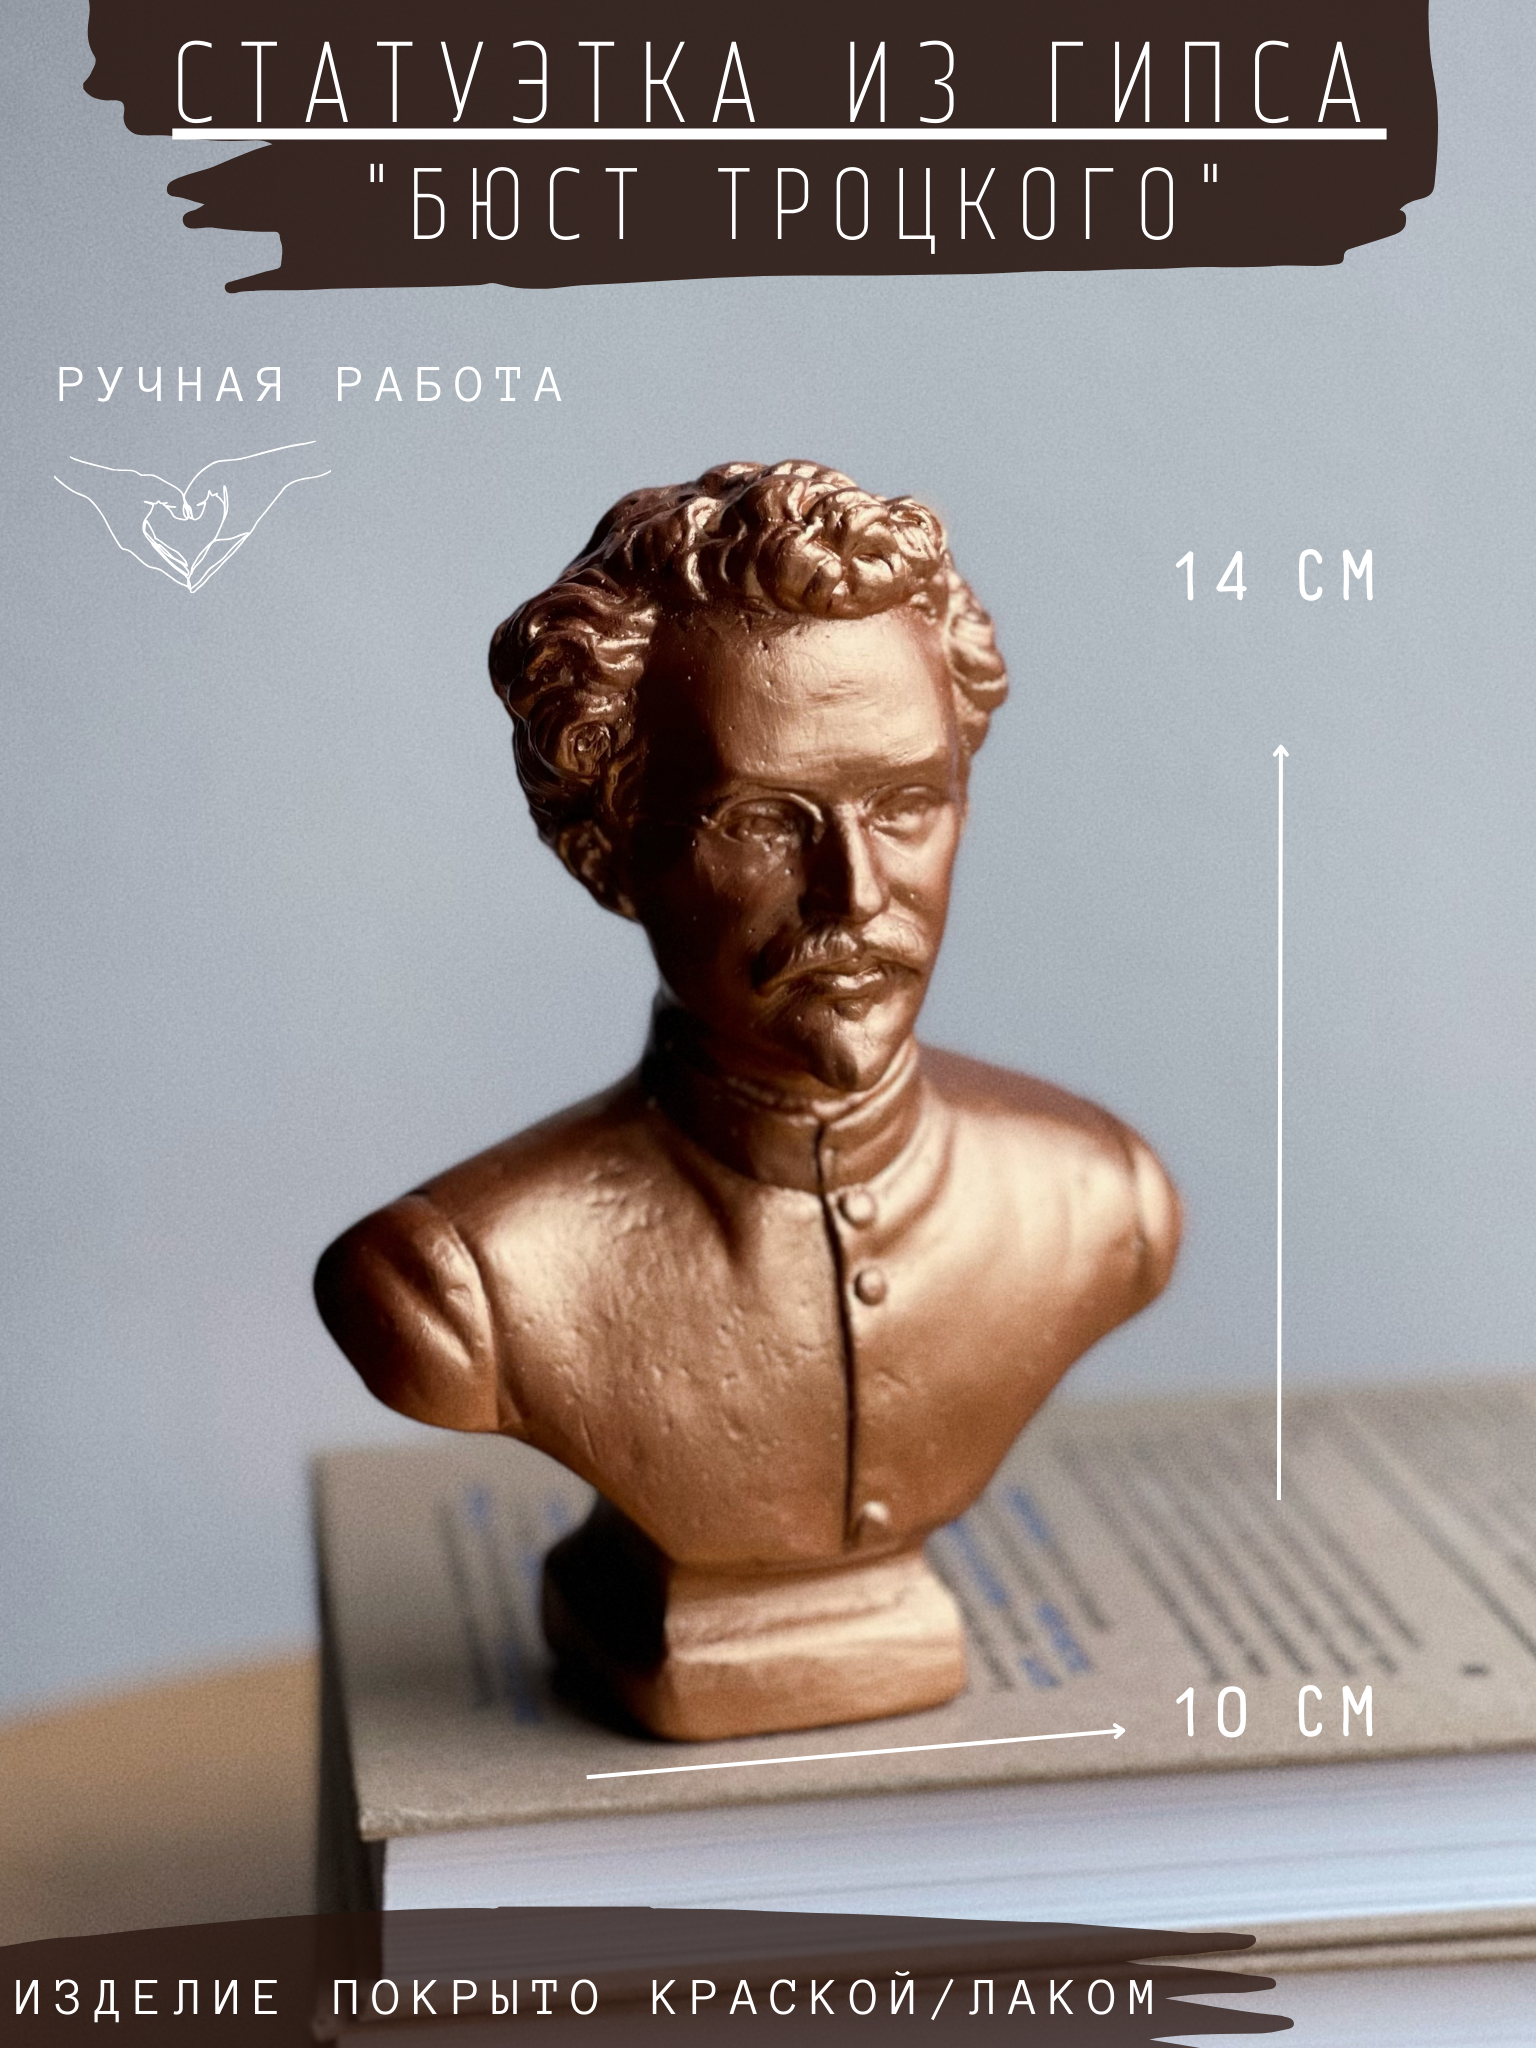 Статуэтка Бюст Троцкого, 14 см, бронза, гипс